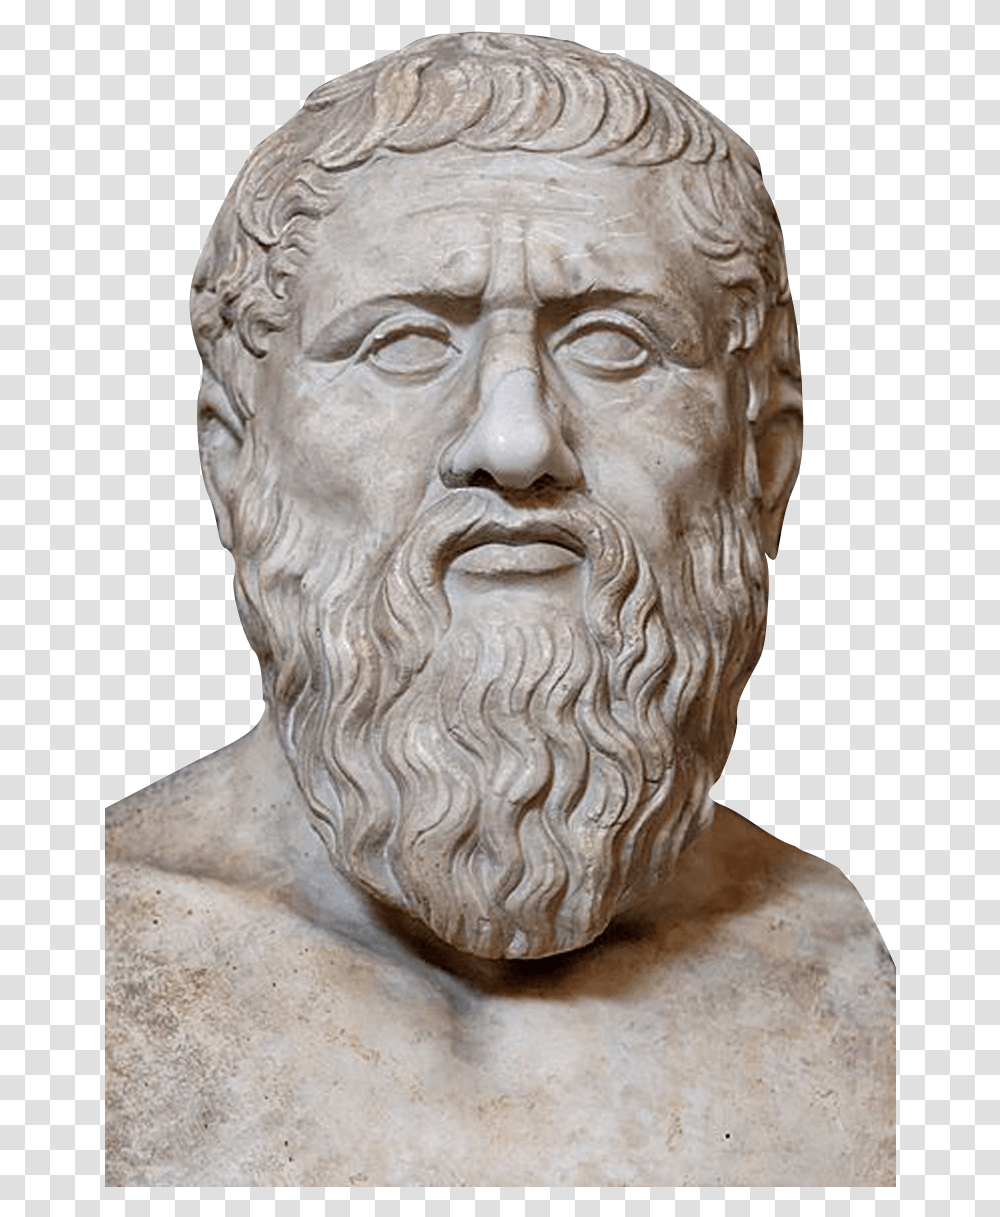 Plato Statue Plato Psychology, Head, Sculpture, Archaeology Transparent Png